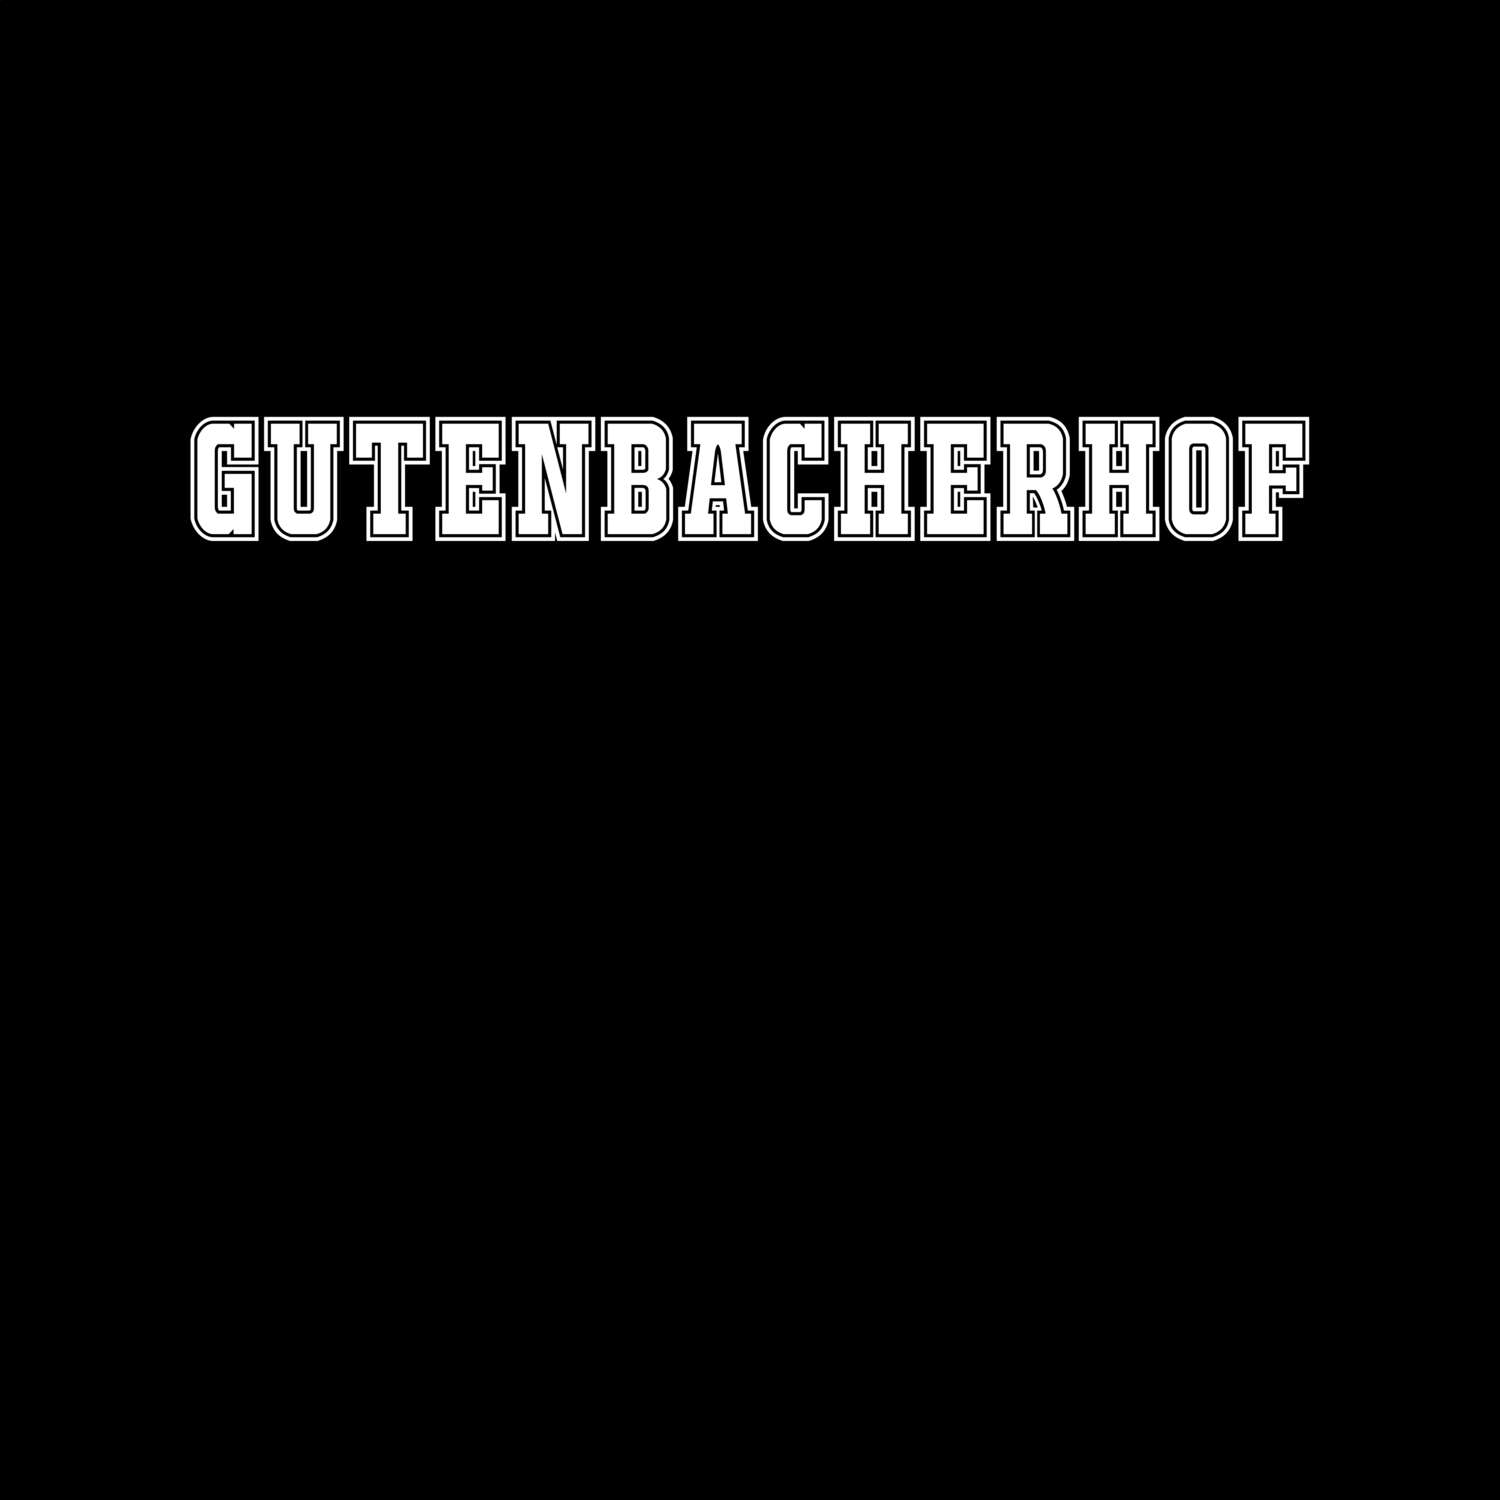 Gutenbacherhof T-Shirt »Classic«